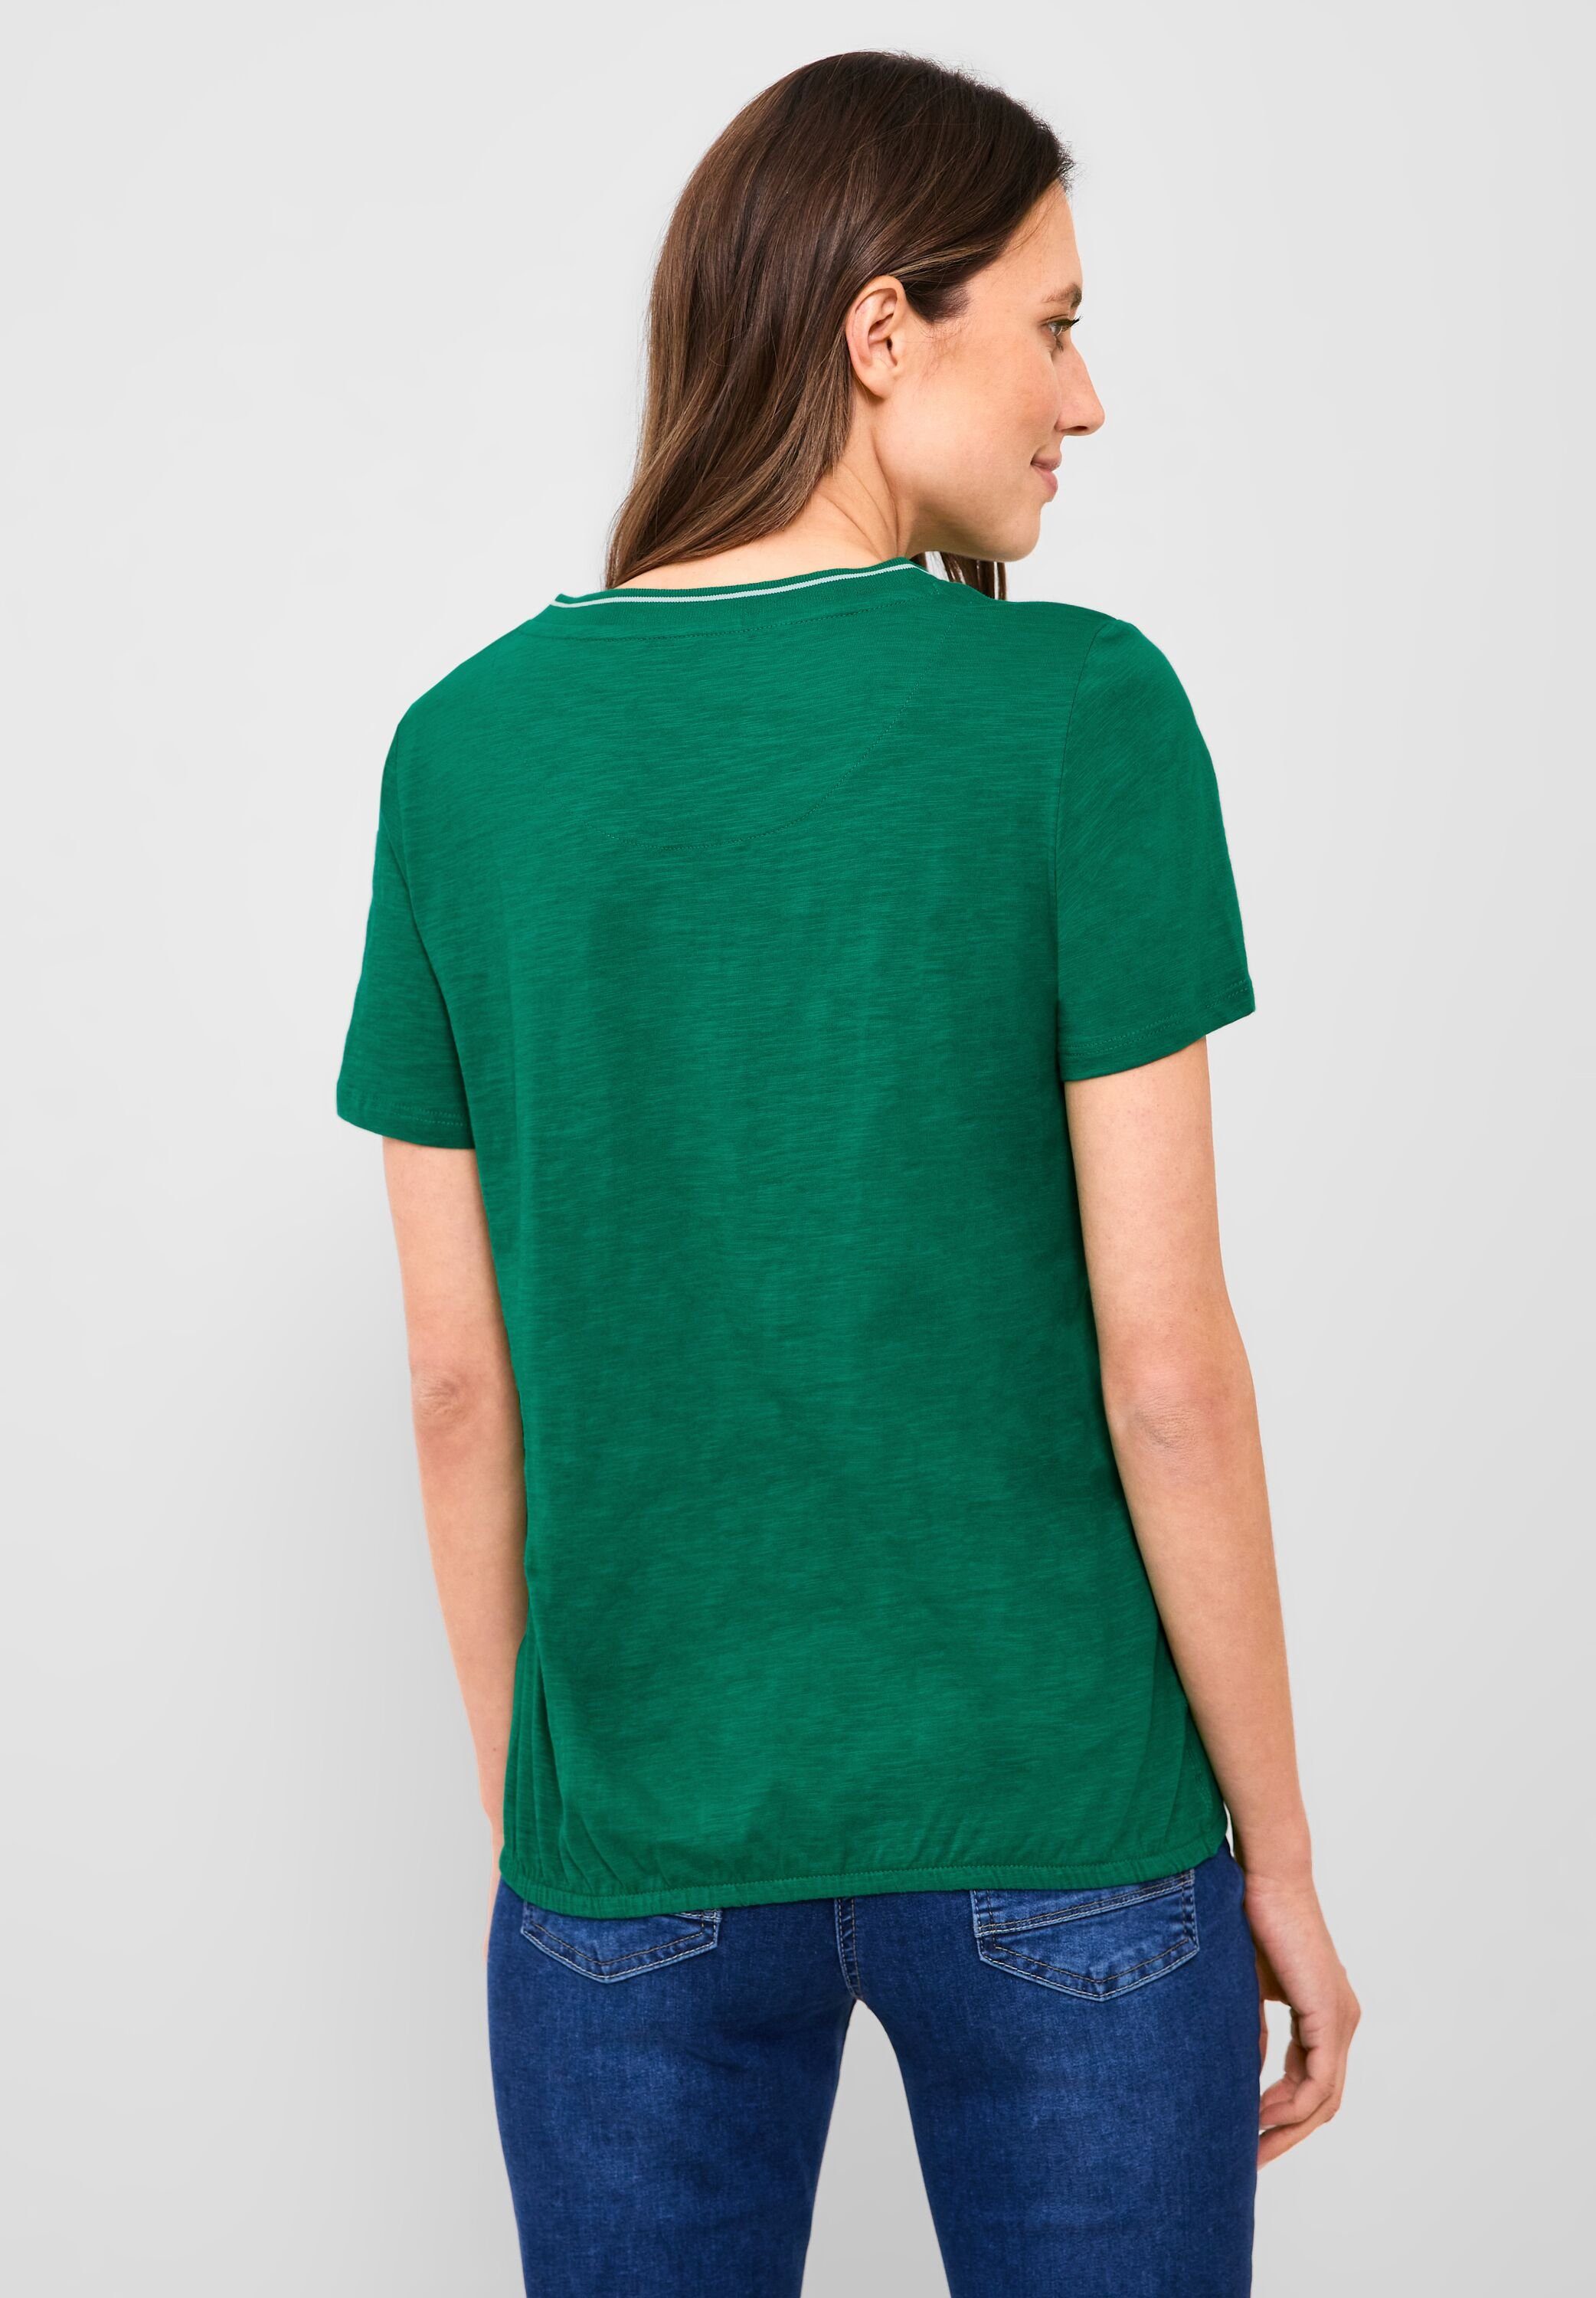 luscious Unifarbe in Cecil green 3/4-Arm-Shirt